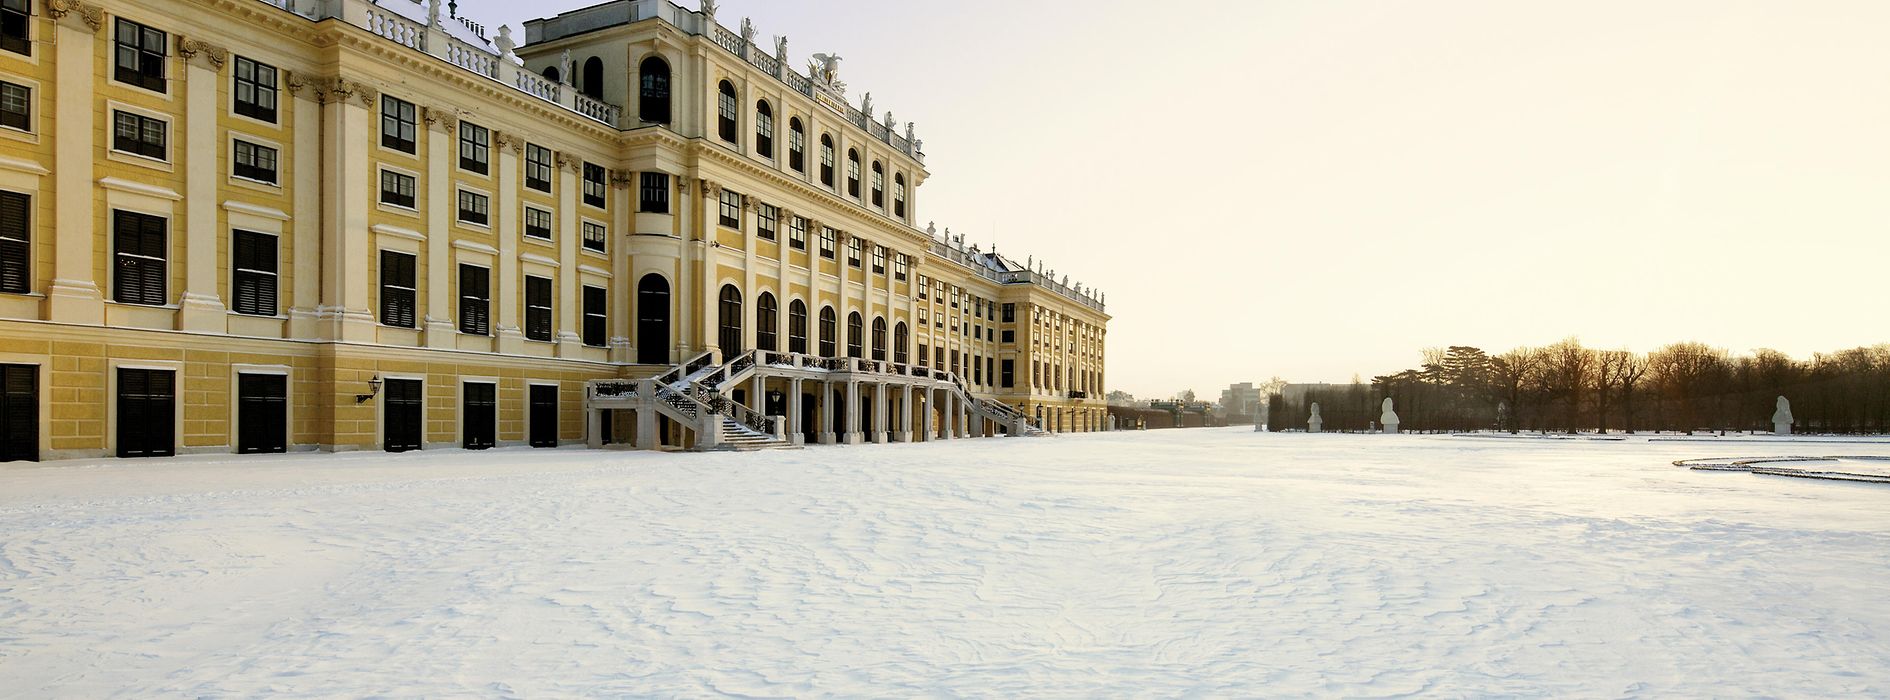 Schönbrunn Palace, Winter